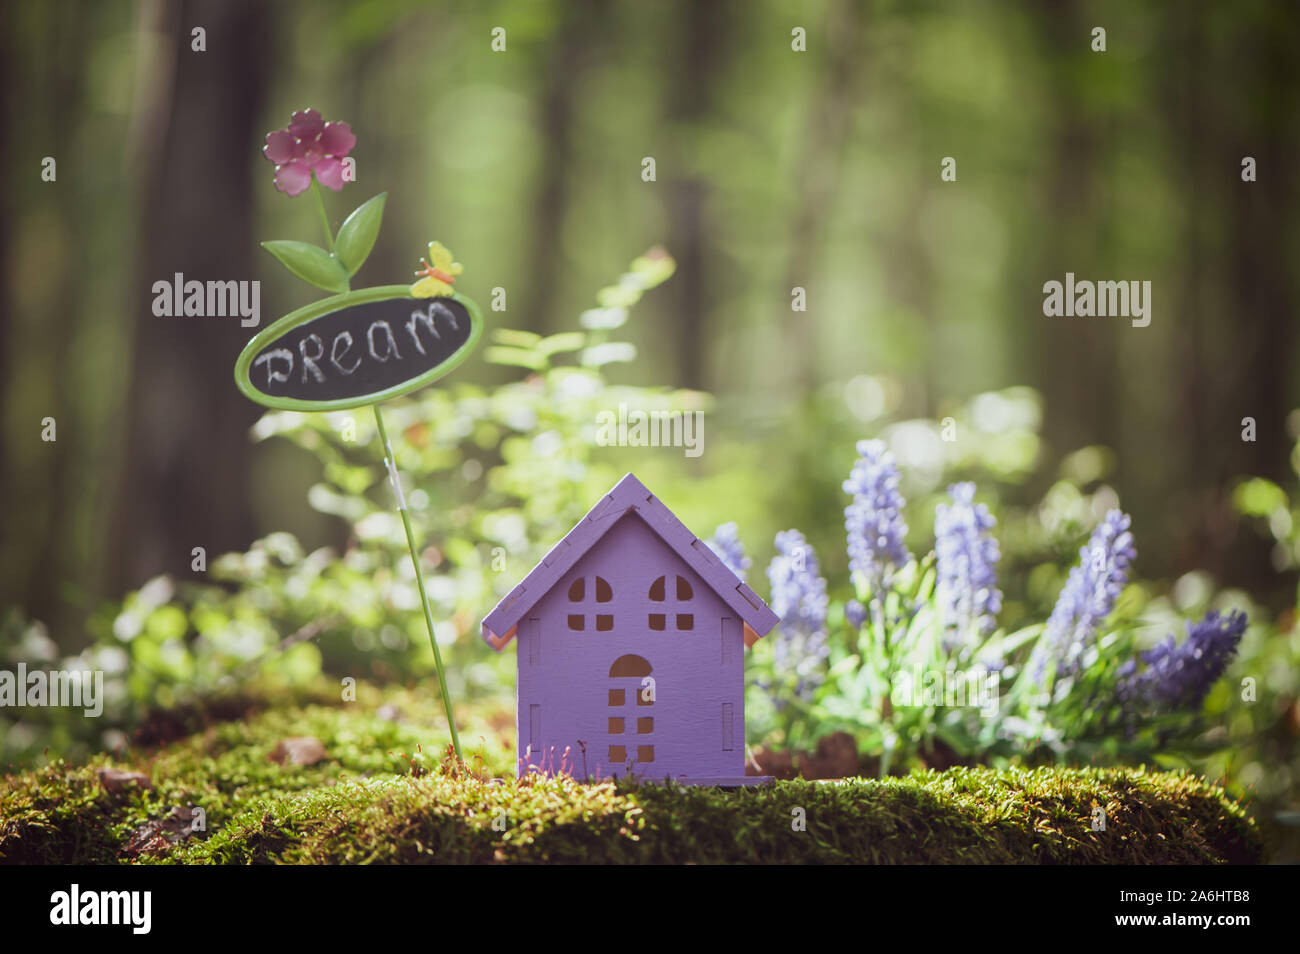 Fabelhaft, Spielzeug, Haus, die Farben von Lavendel mit ein Zeichen für die Beschriftung, vor dem Hintergrund einer märchenhaften Wald. Konzept gemütliches Heim, gemütliche Welt. Stockfoto